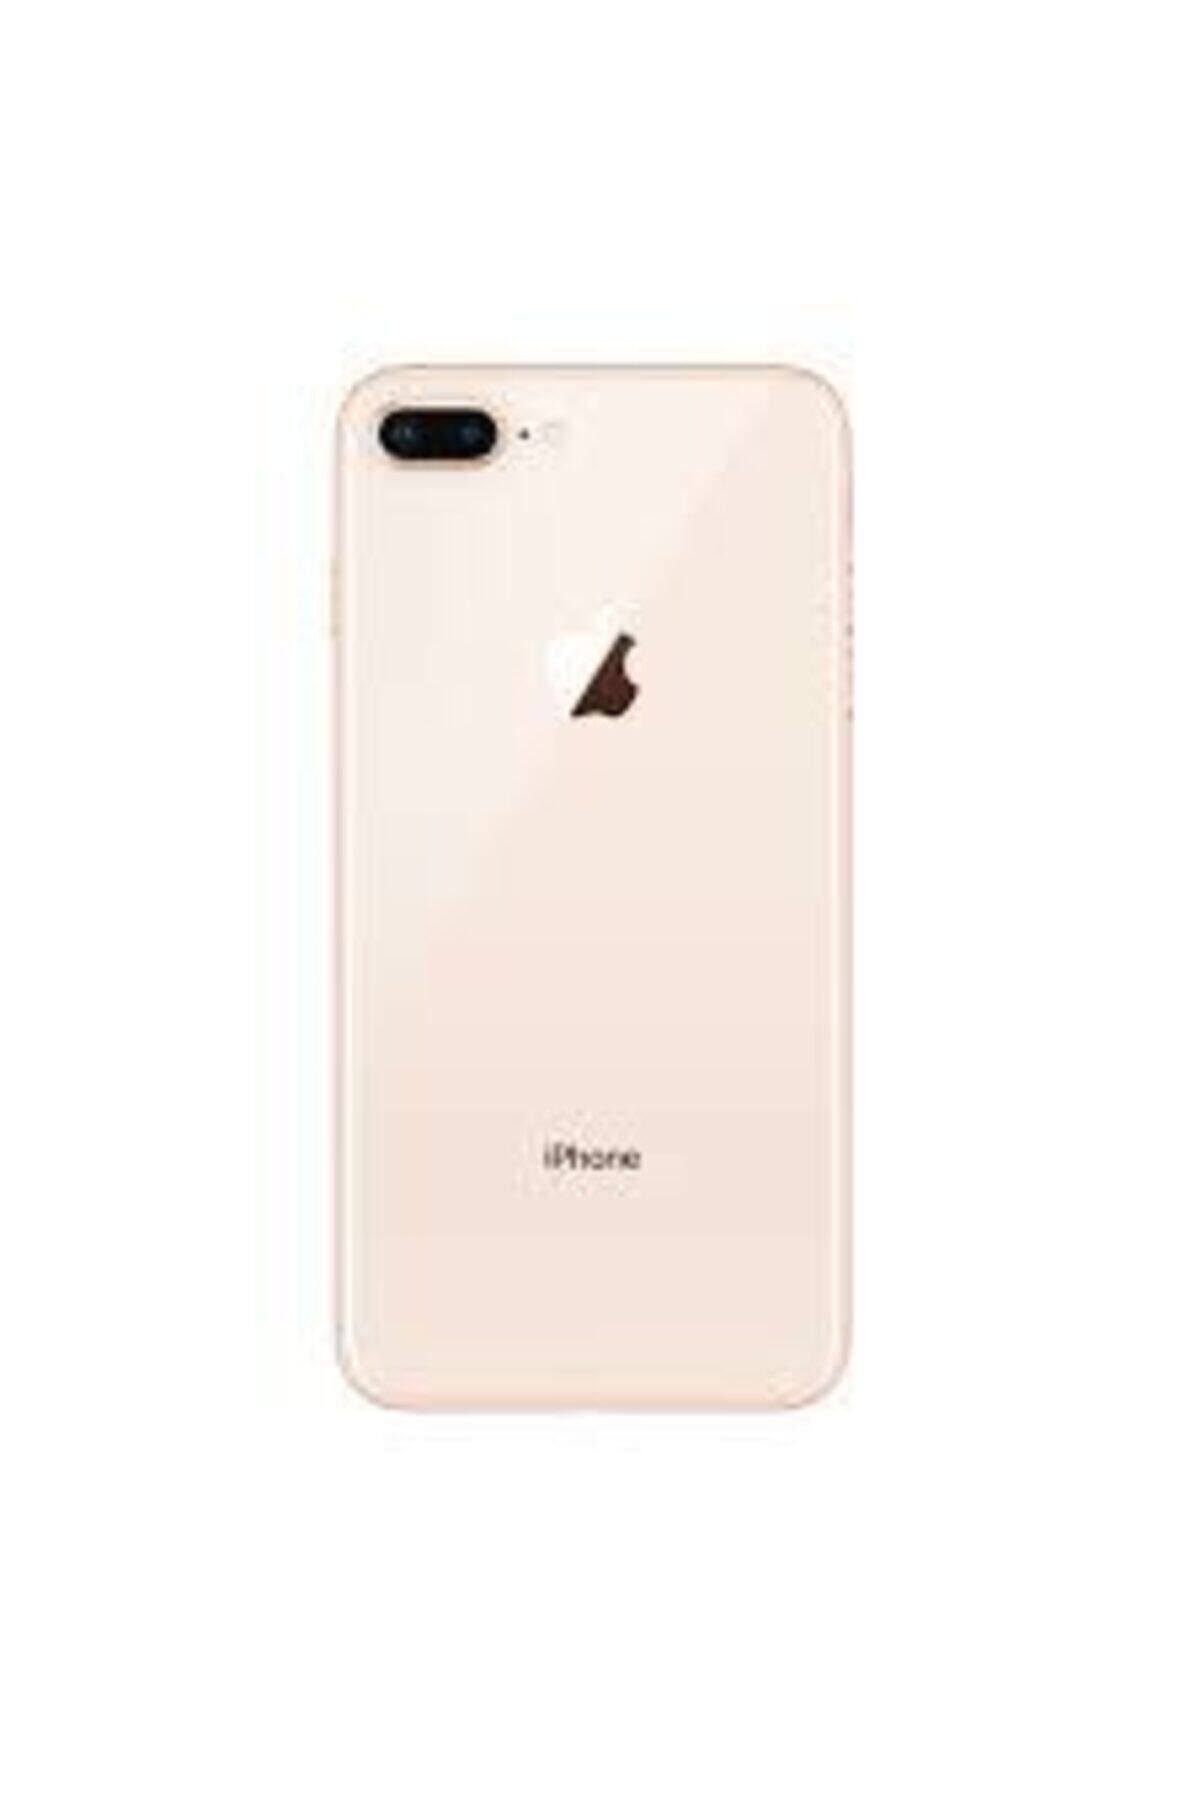 Boyra Teknoloji Apple Iphone 8 Plus Dolu Kasa 8g Plus Beyaz